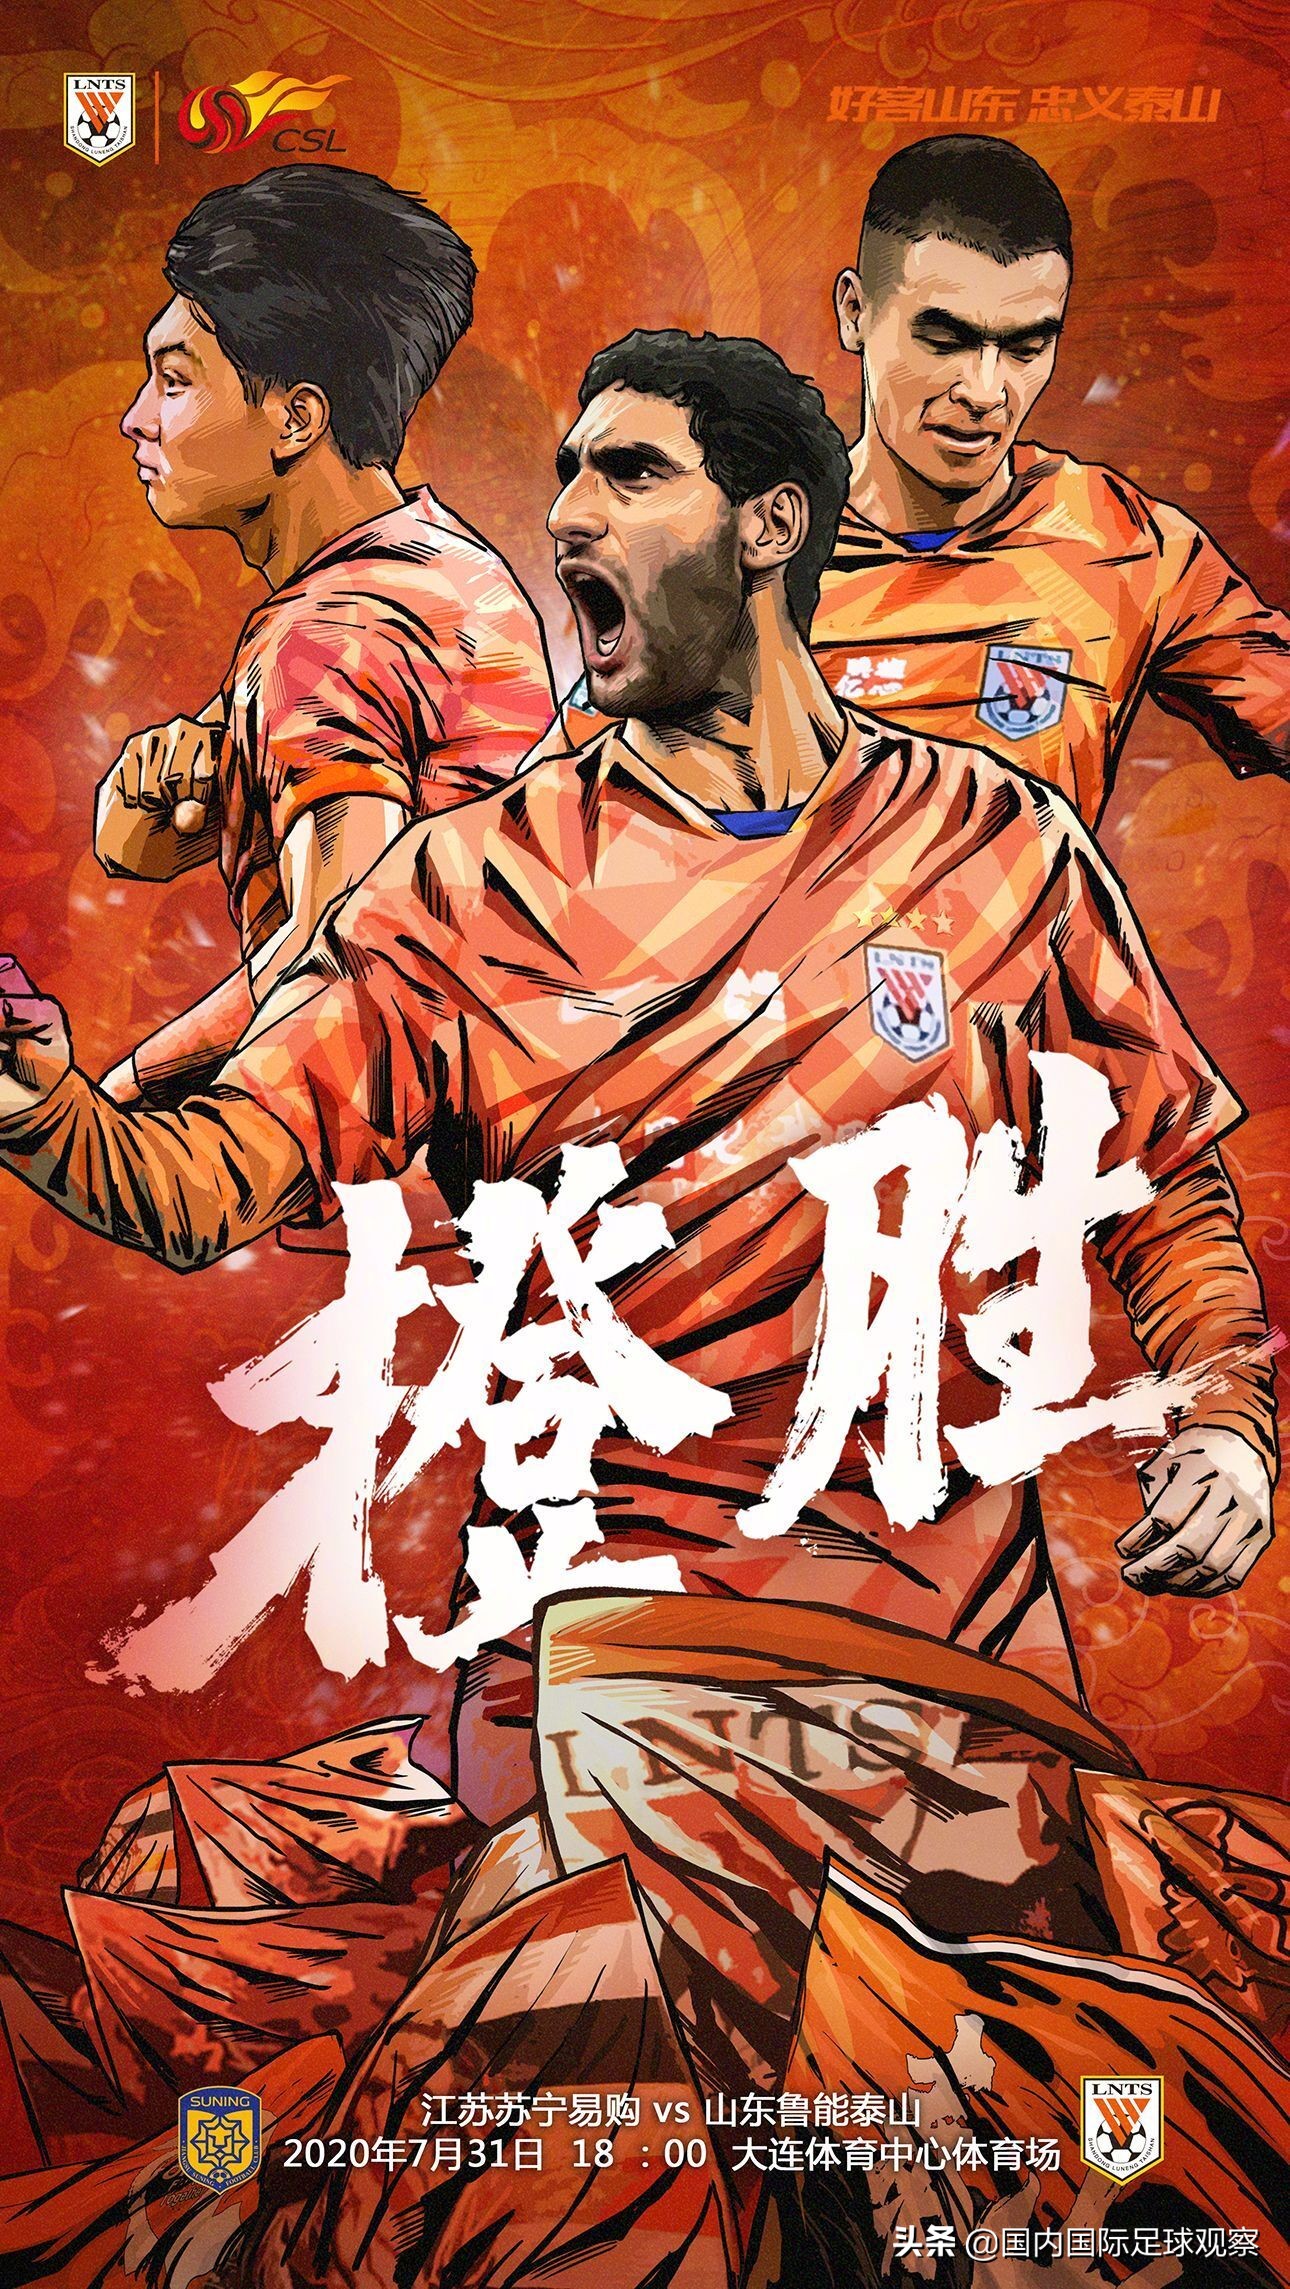 山东鲁能发布中超第二轮比赛海报预测比分鲁能32江苏苏宁